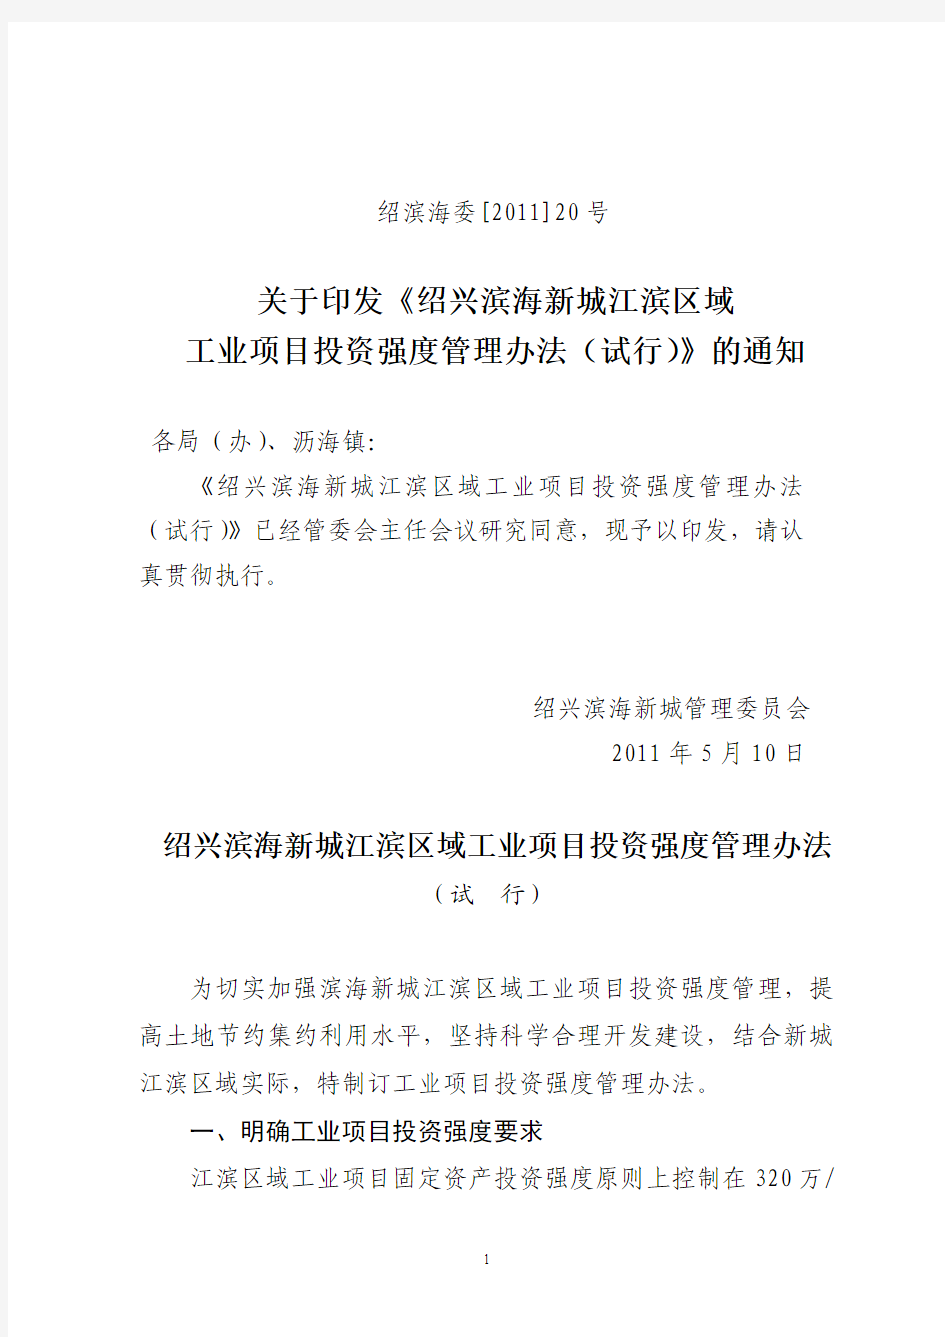 绍滨海委[2011]20号  关于印发《 工业项目投资强度管理办法》的通知